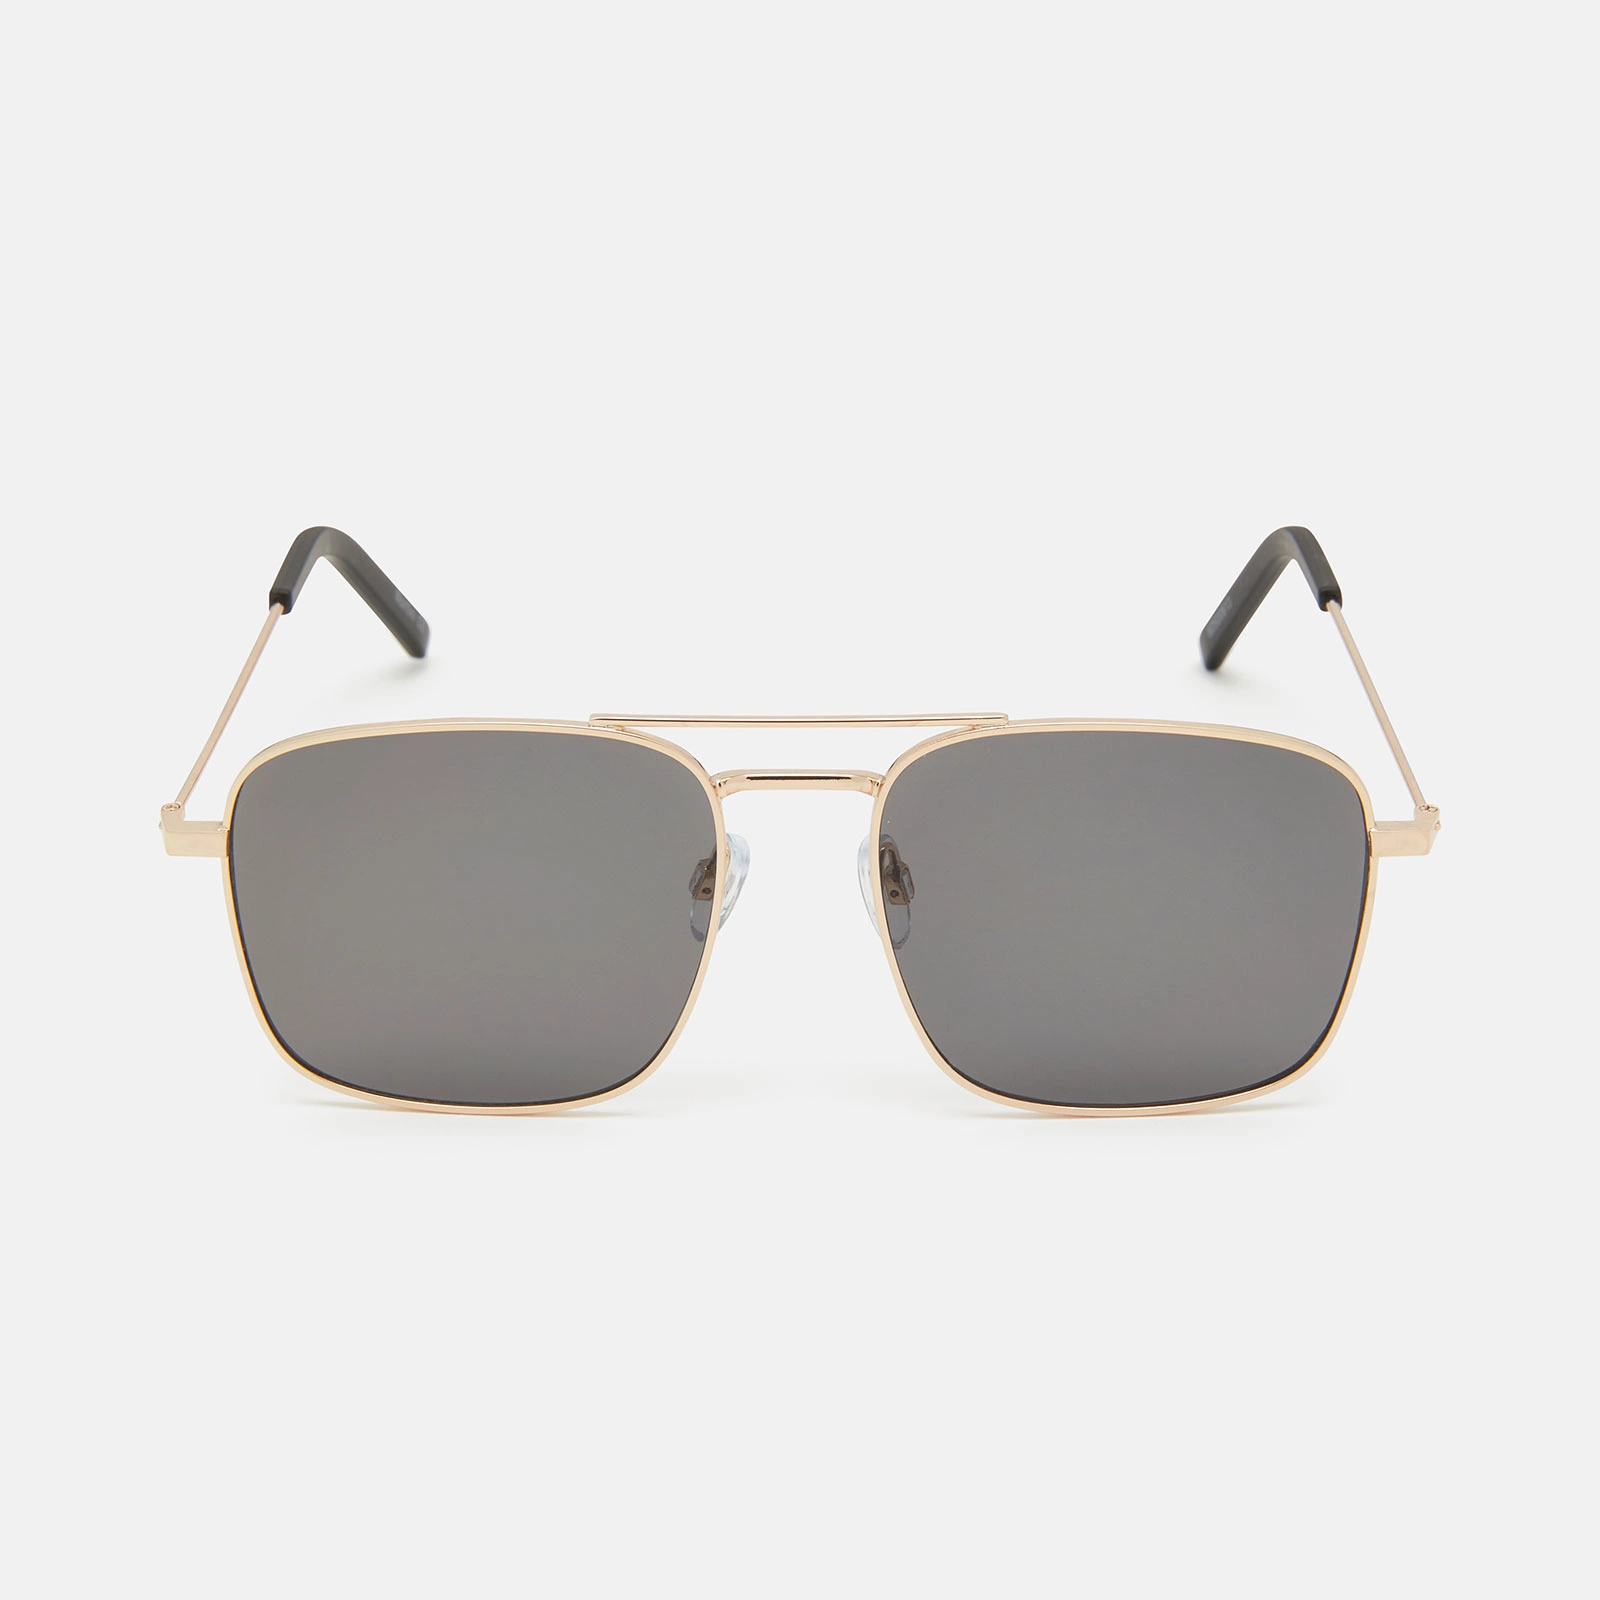 Solglasögon – guldfärgad båge med svarttonat glas